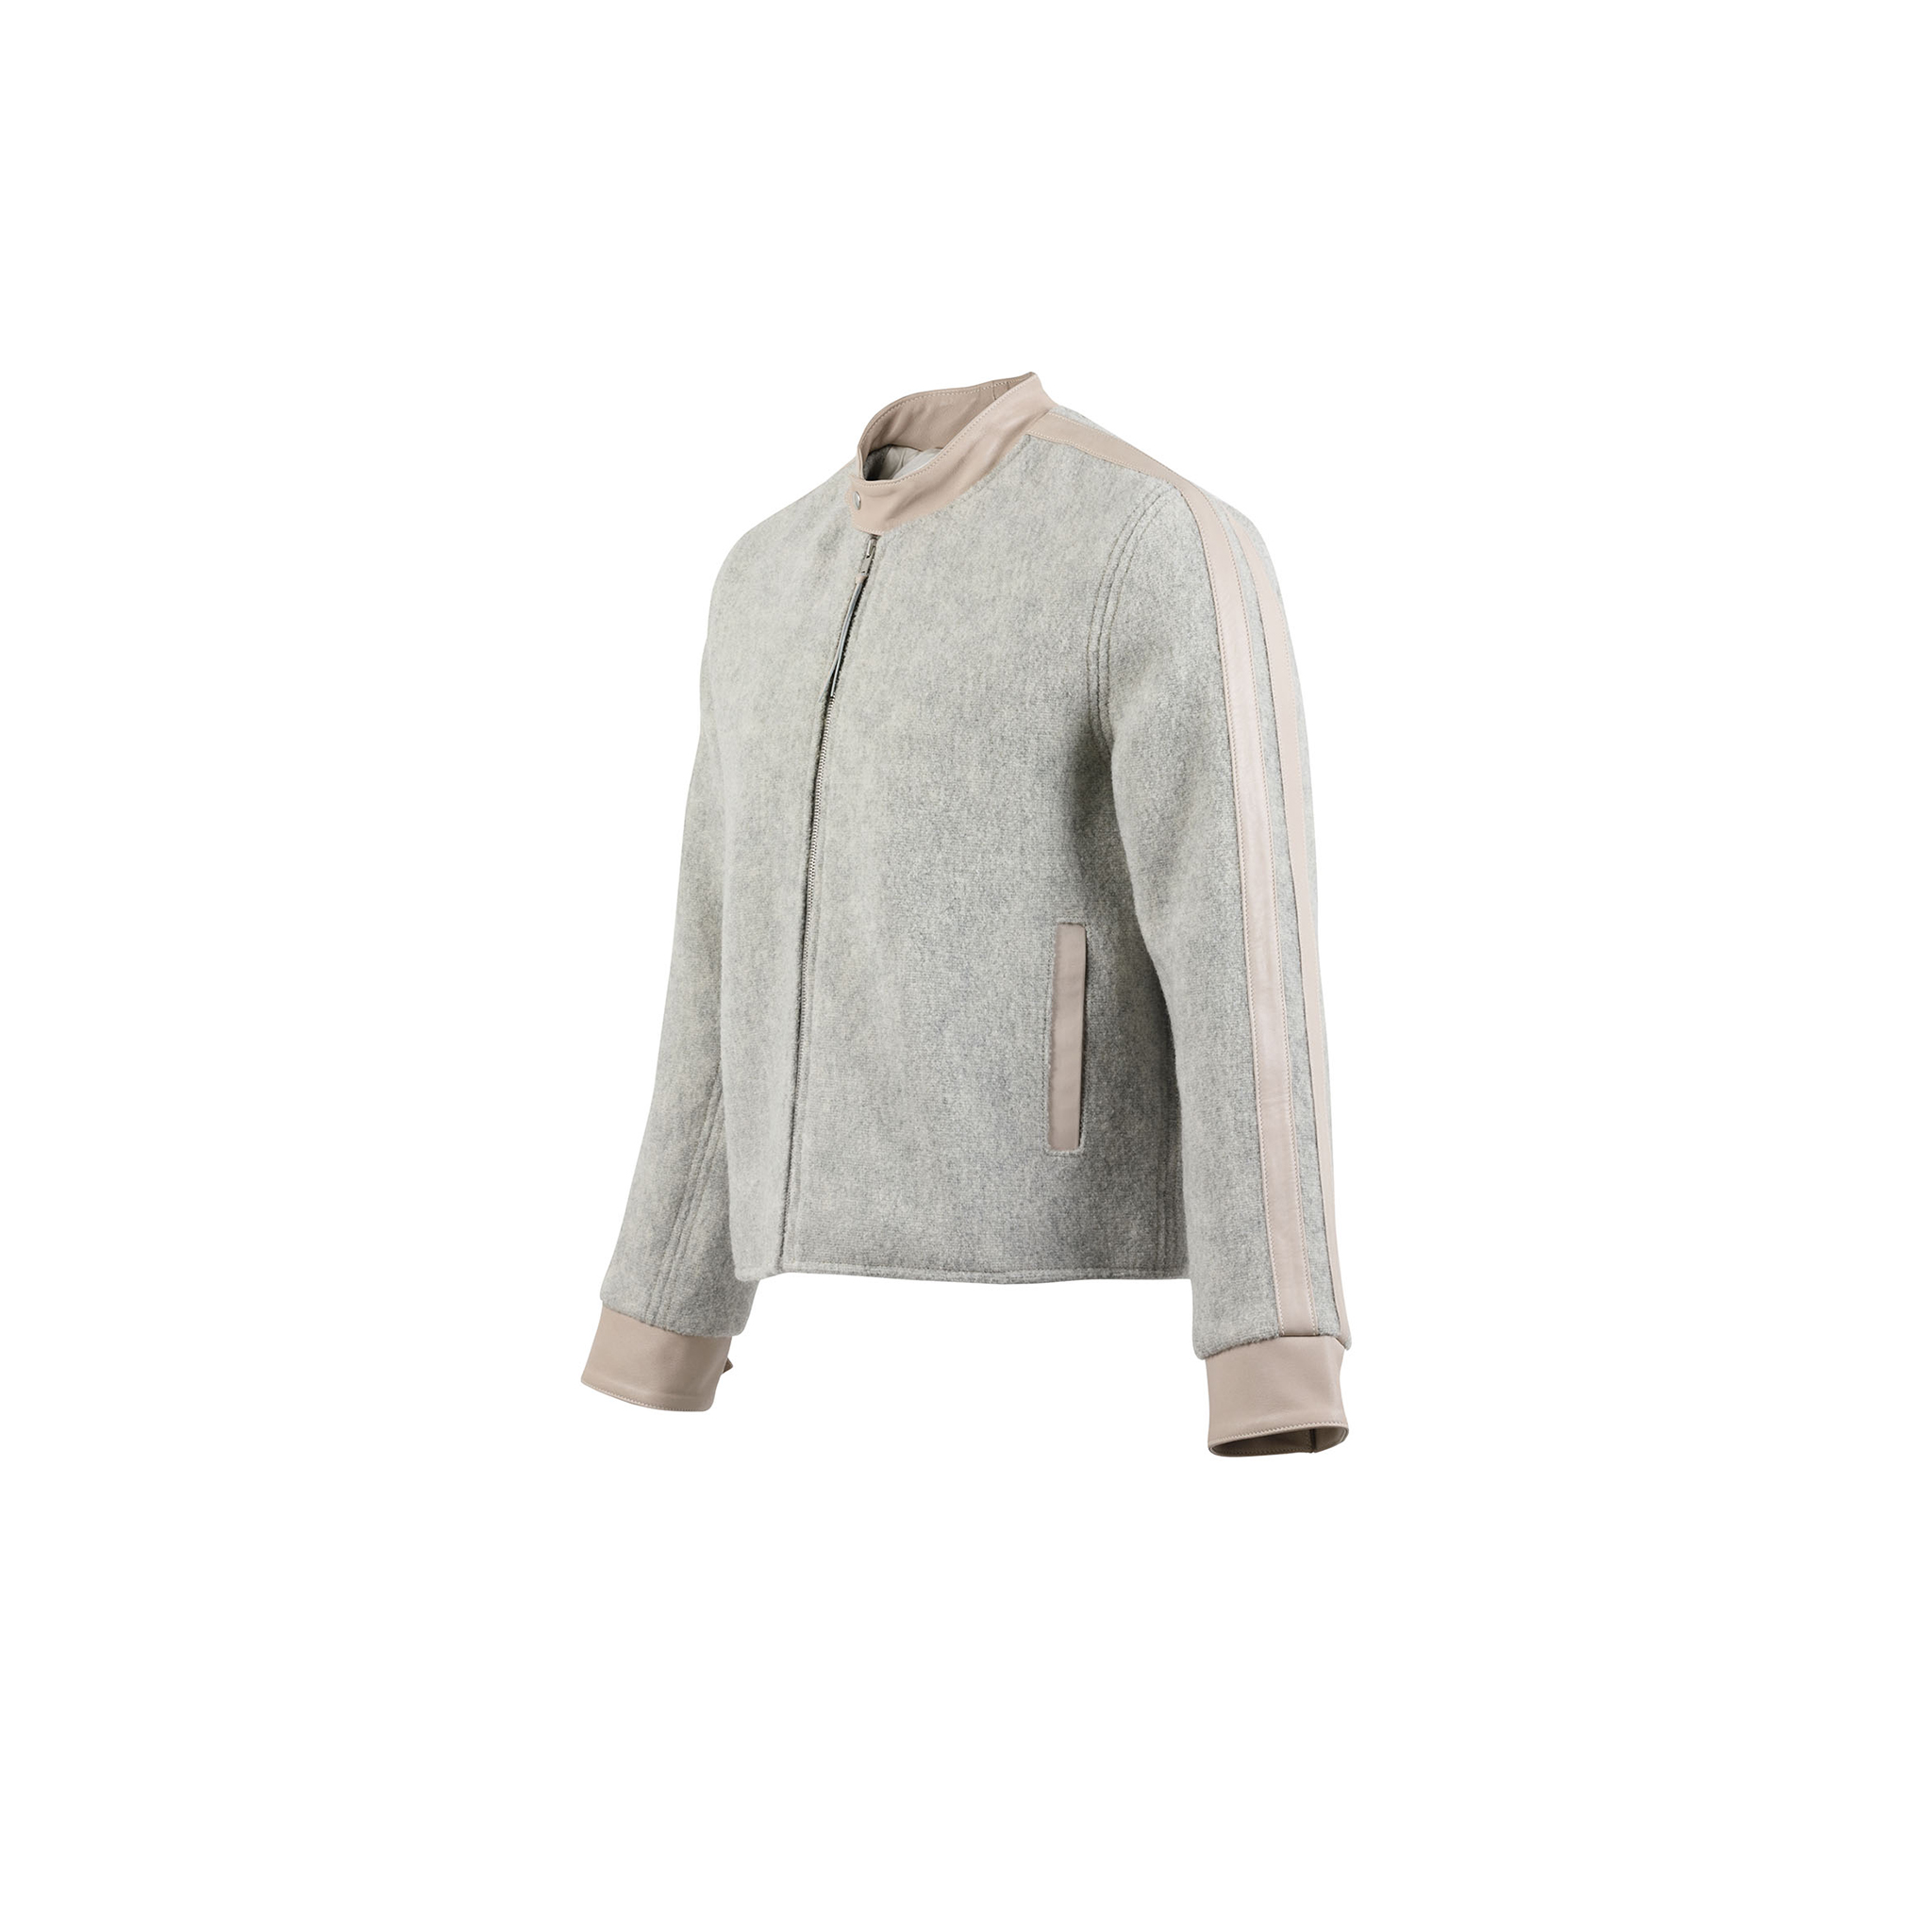 Blouson Anglais Jacket - Merino wool - Grey color - Ecru white strips